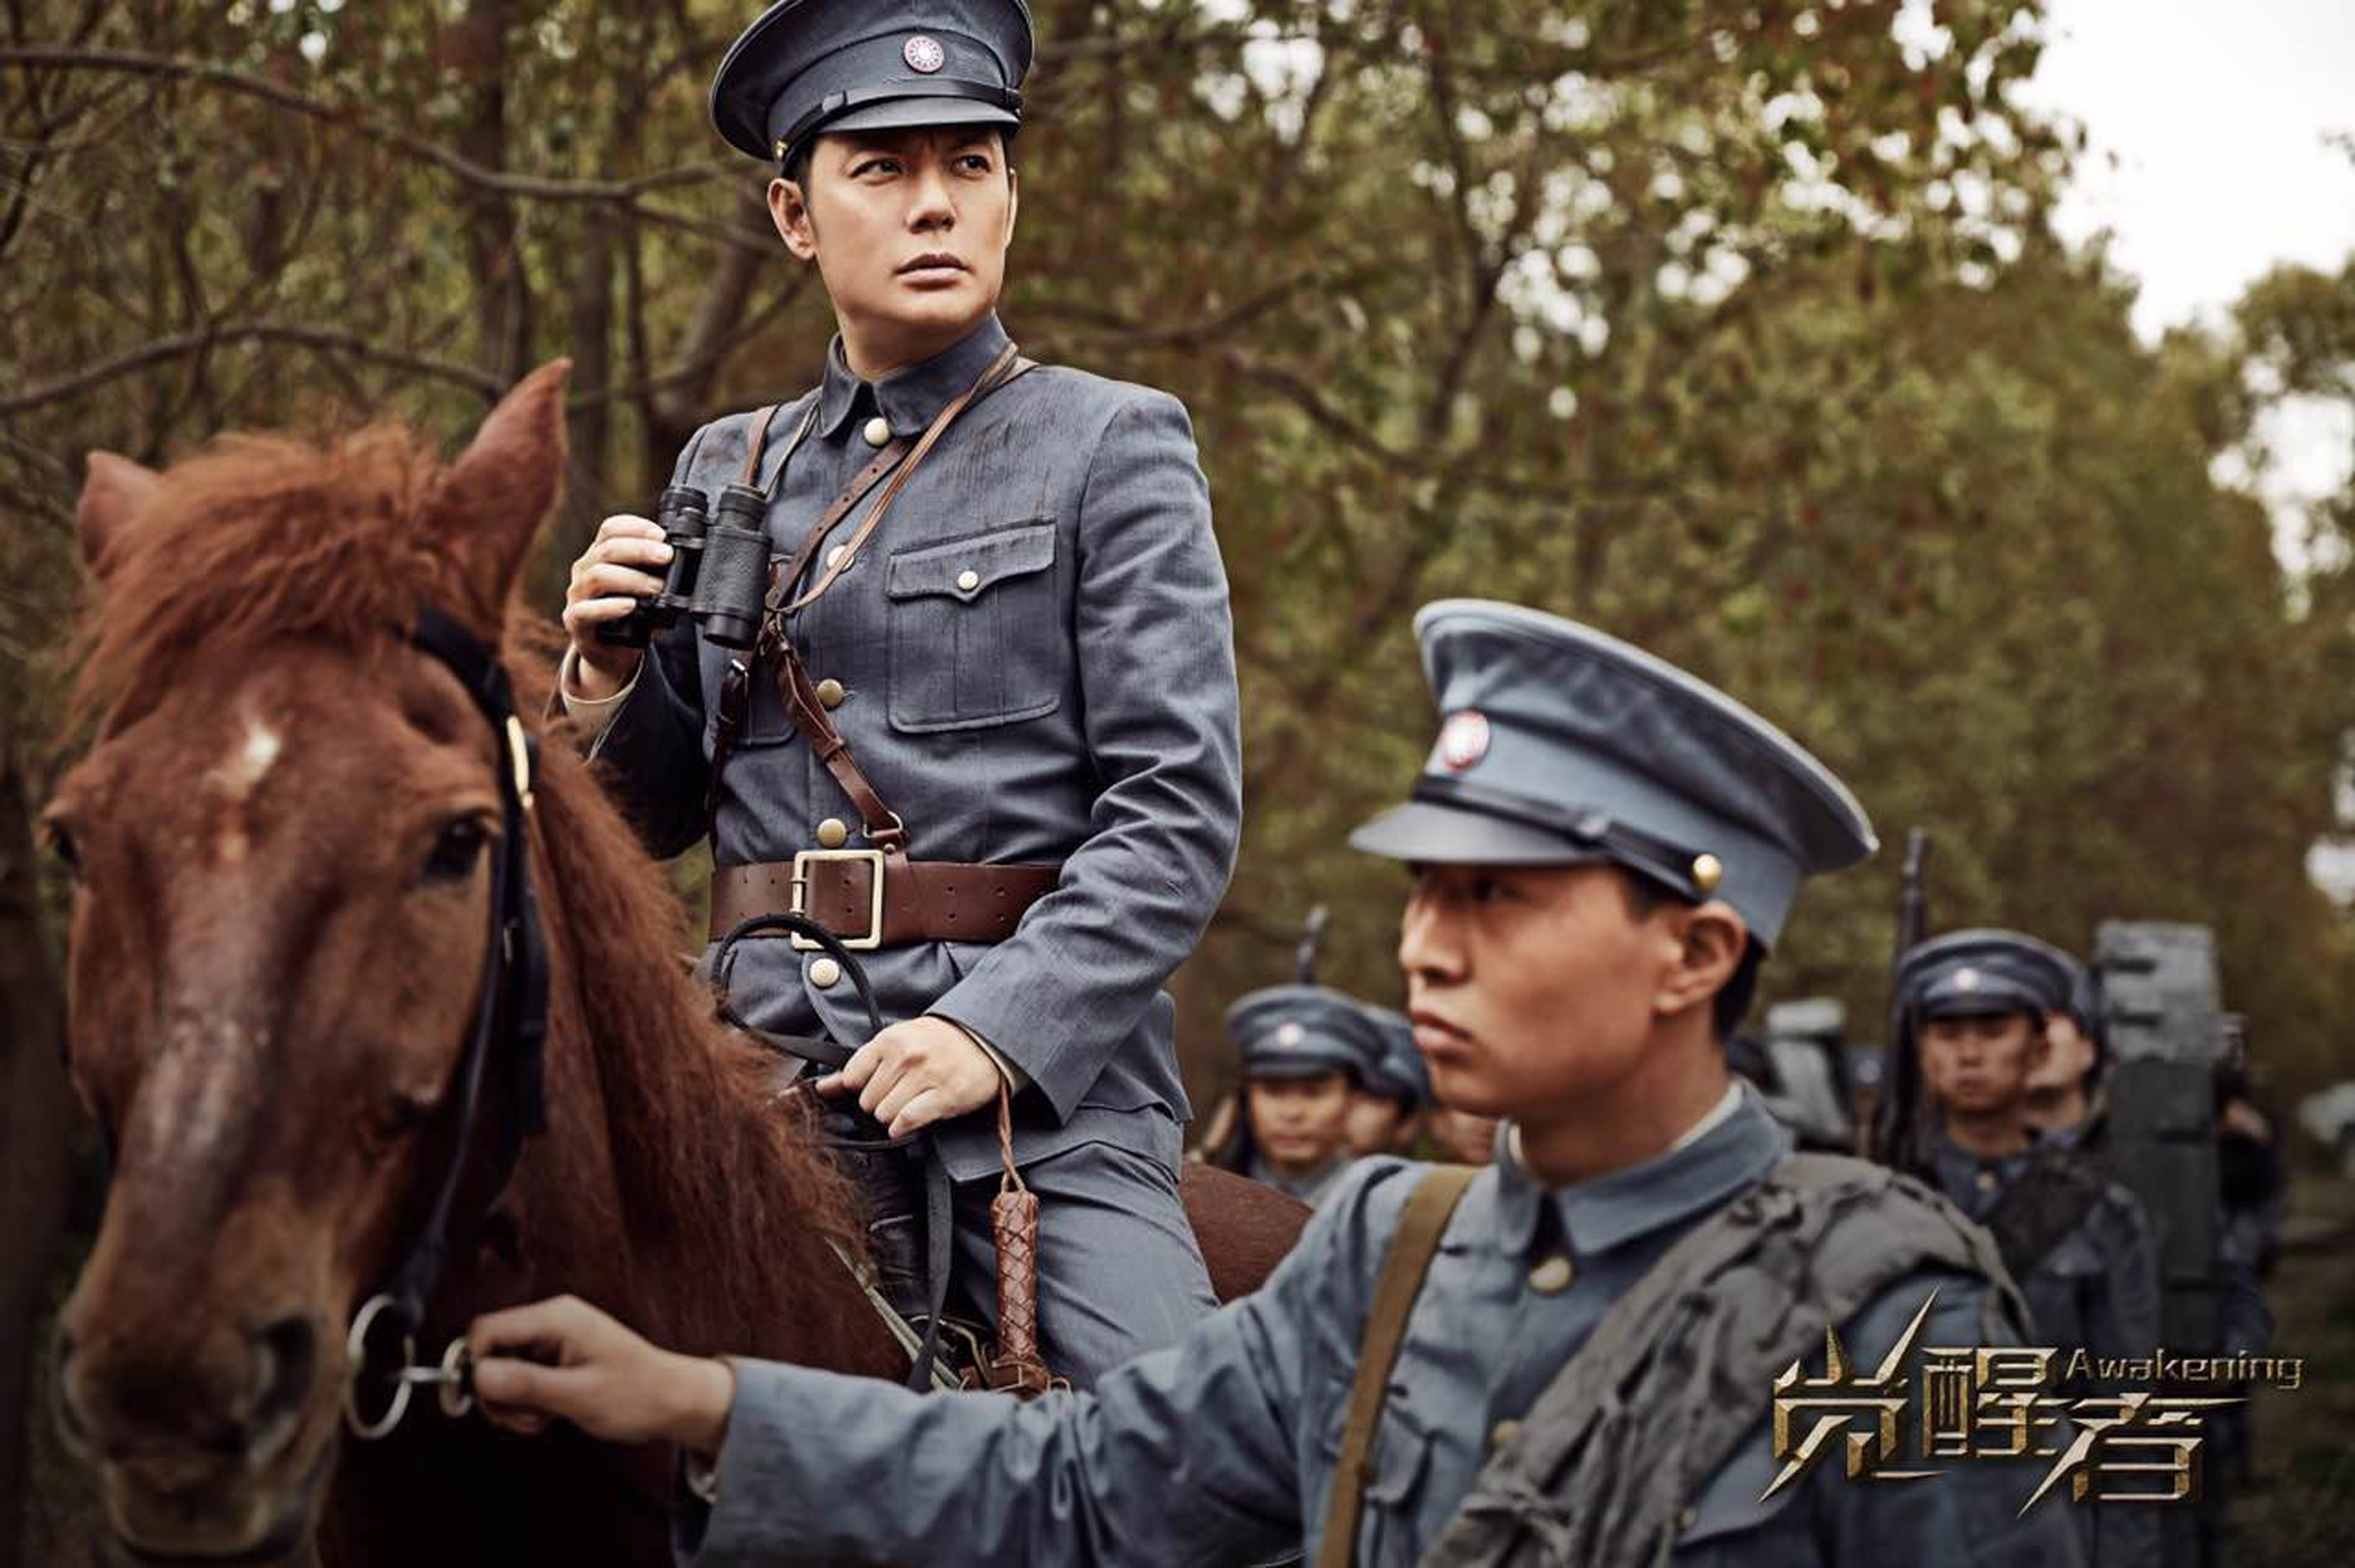 张丹峰,傅程鹏,江铠同等一众实力派演员主演的近代革命大戏《觉醒者》